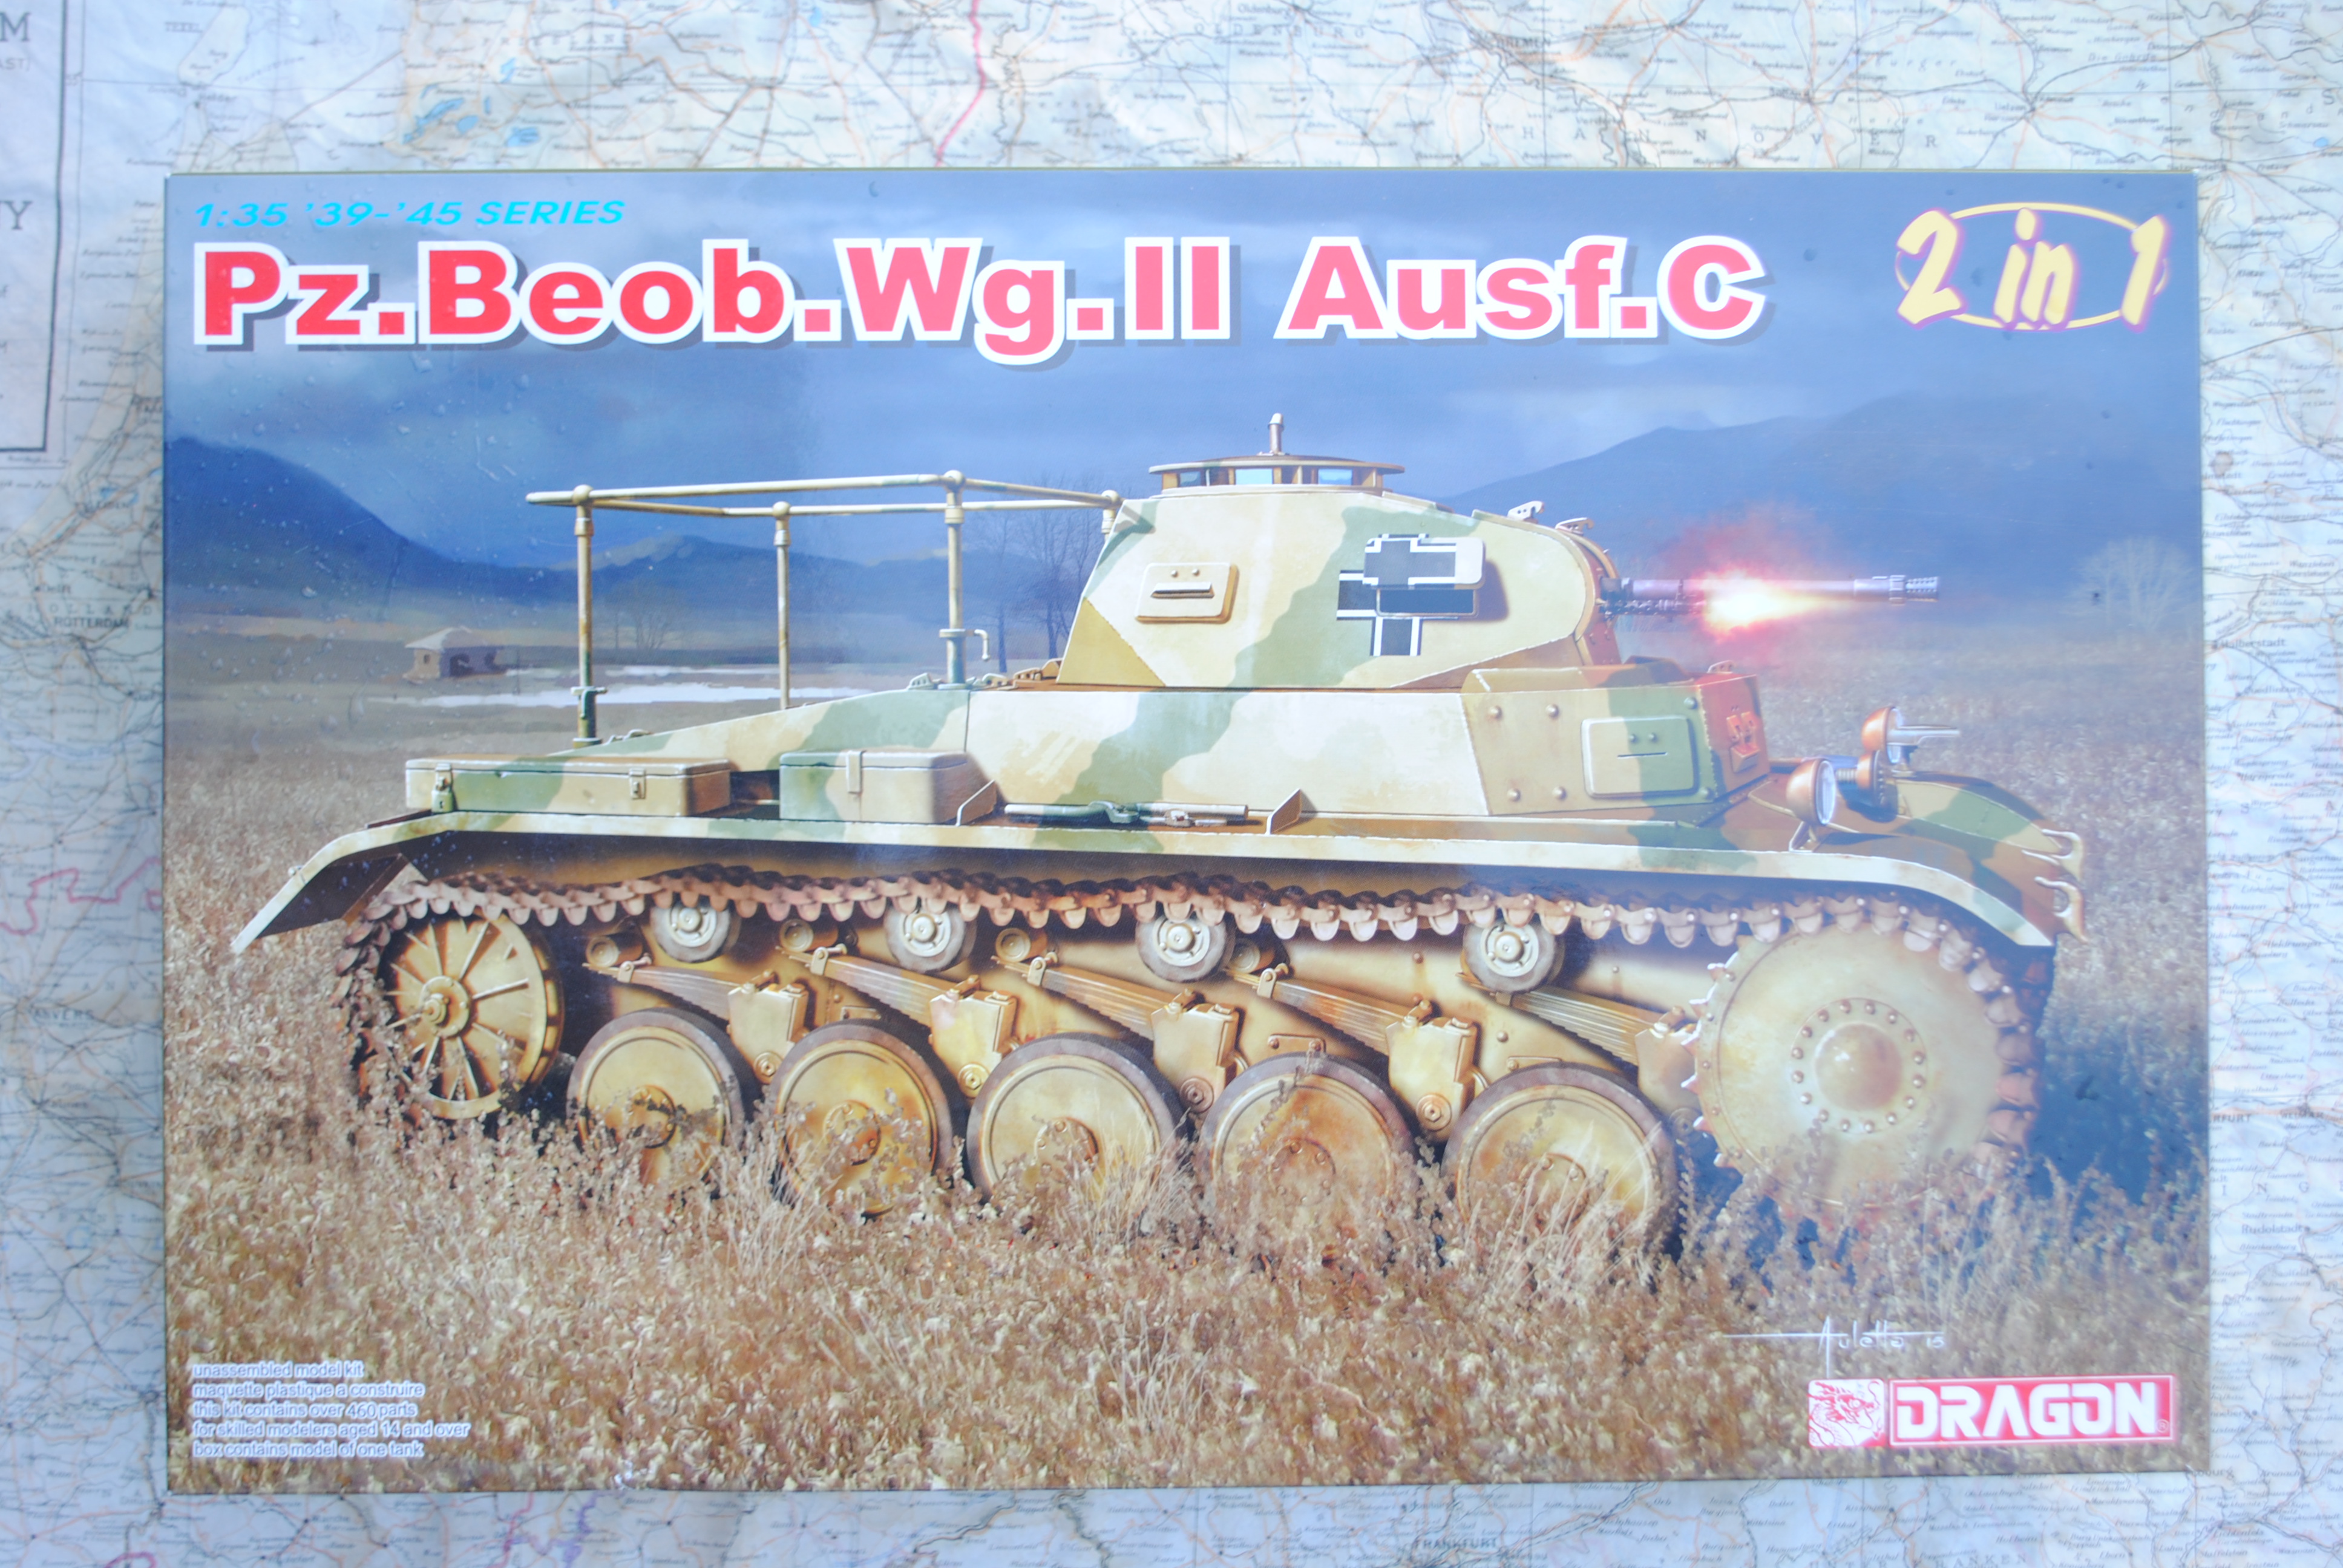 Dragon 6812 Pz.Beob.Wg. II Ausf. C